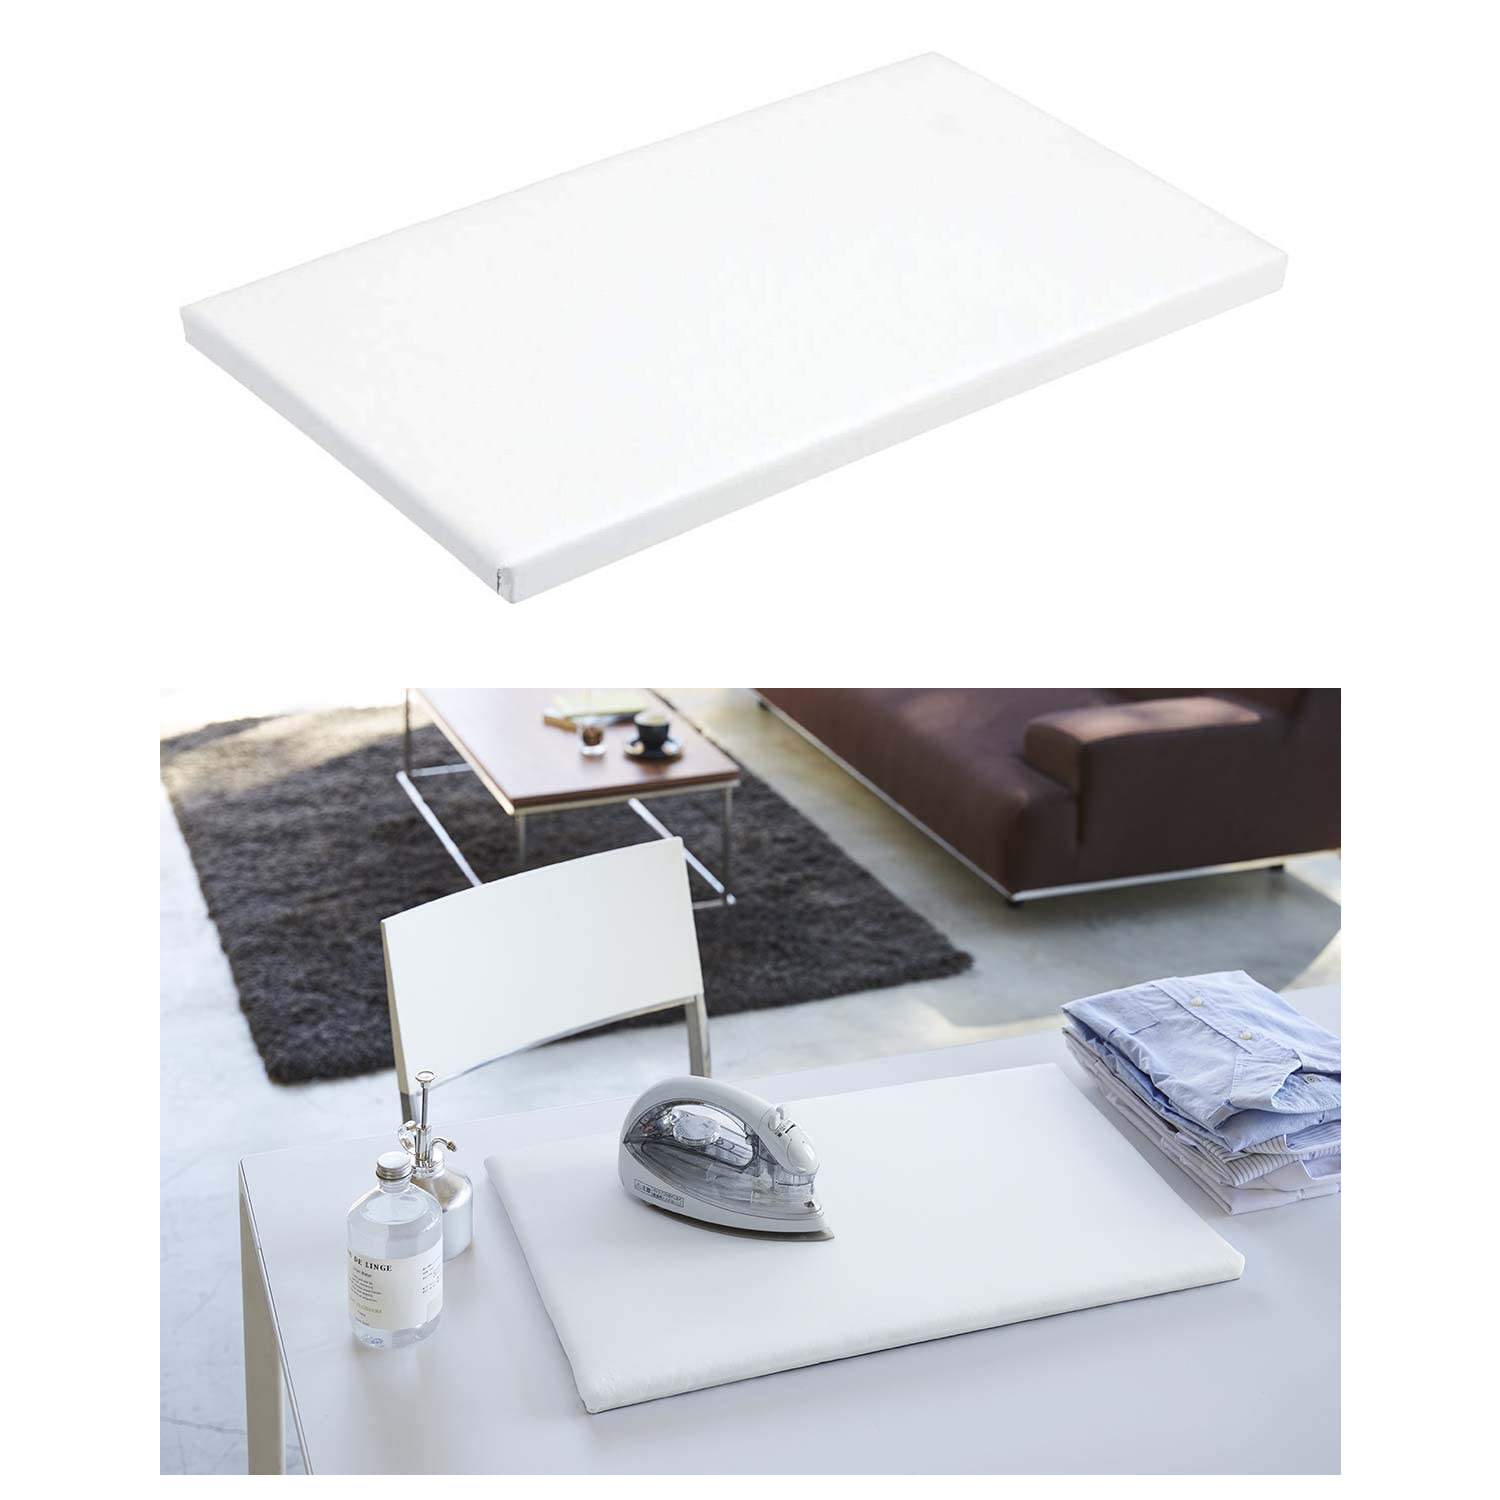 YJ1224 Japanese Artisan Flat Ironing Board White (pcs)